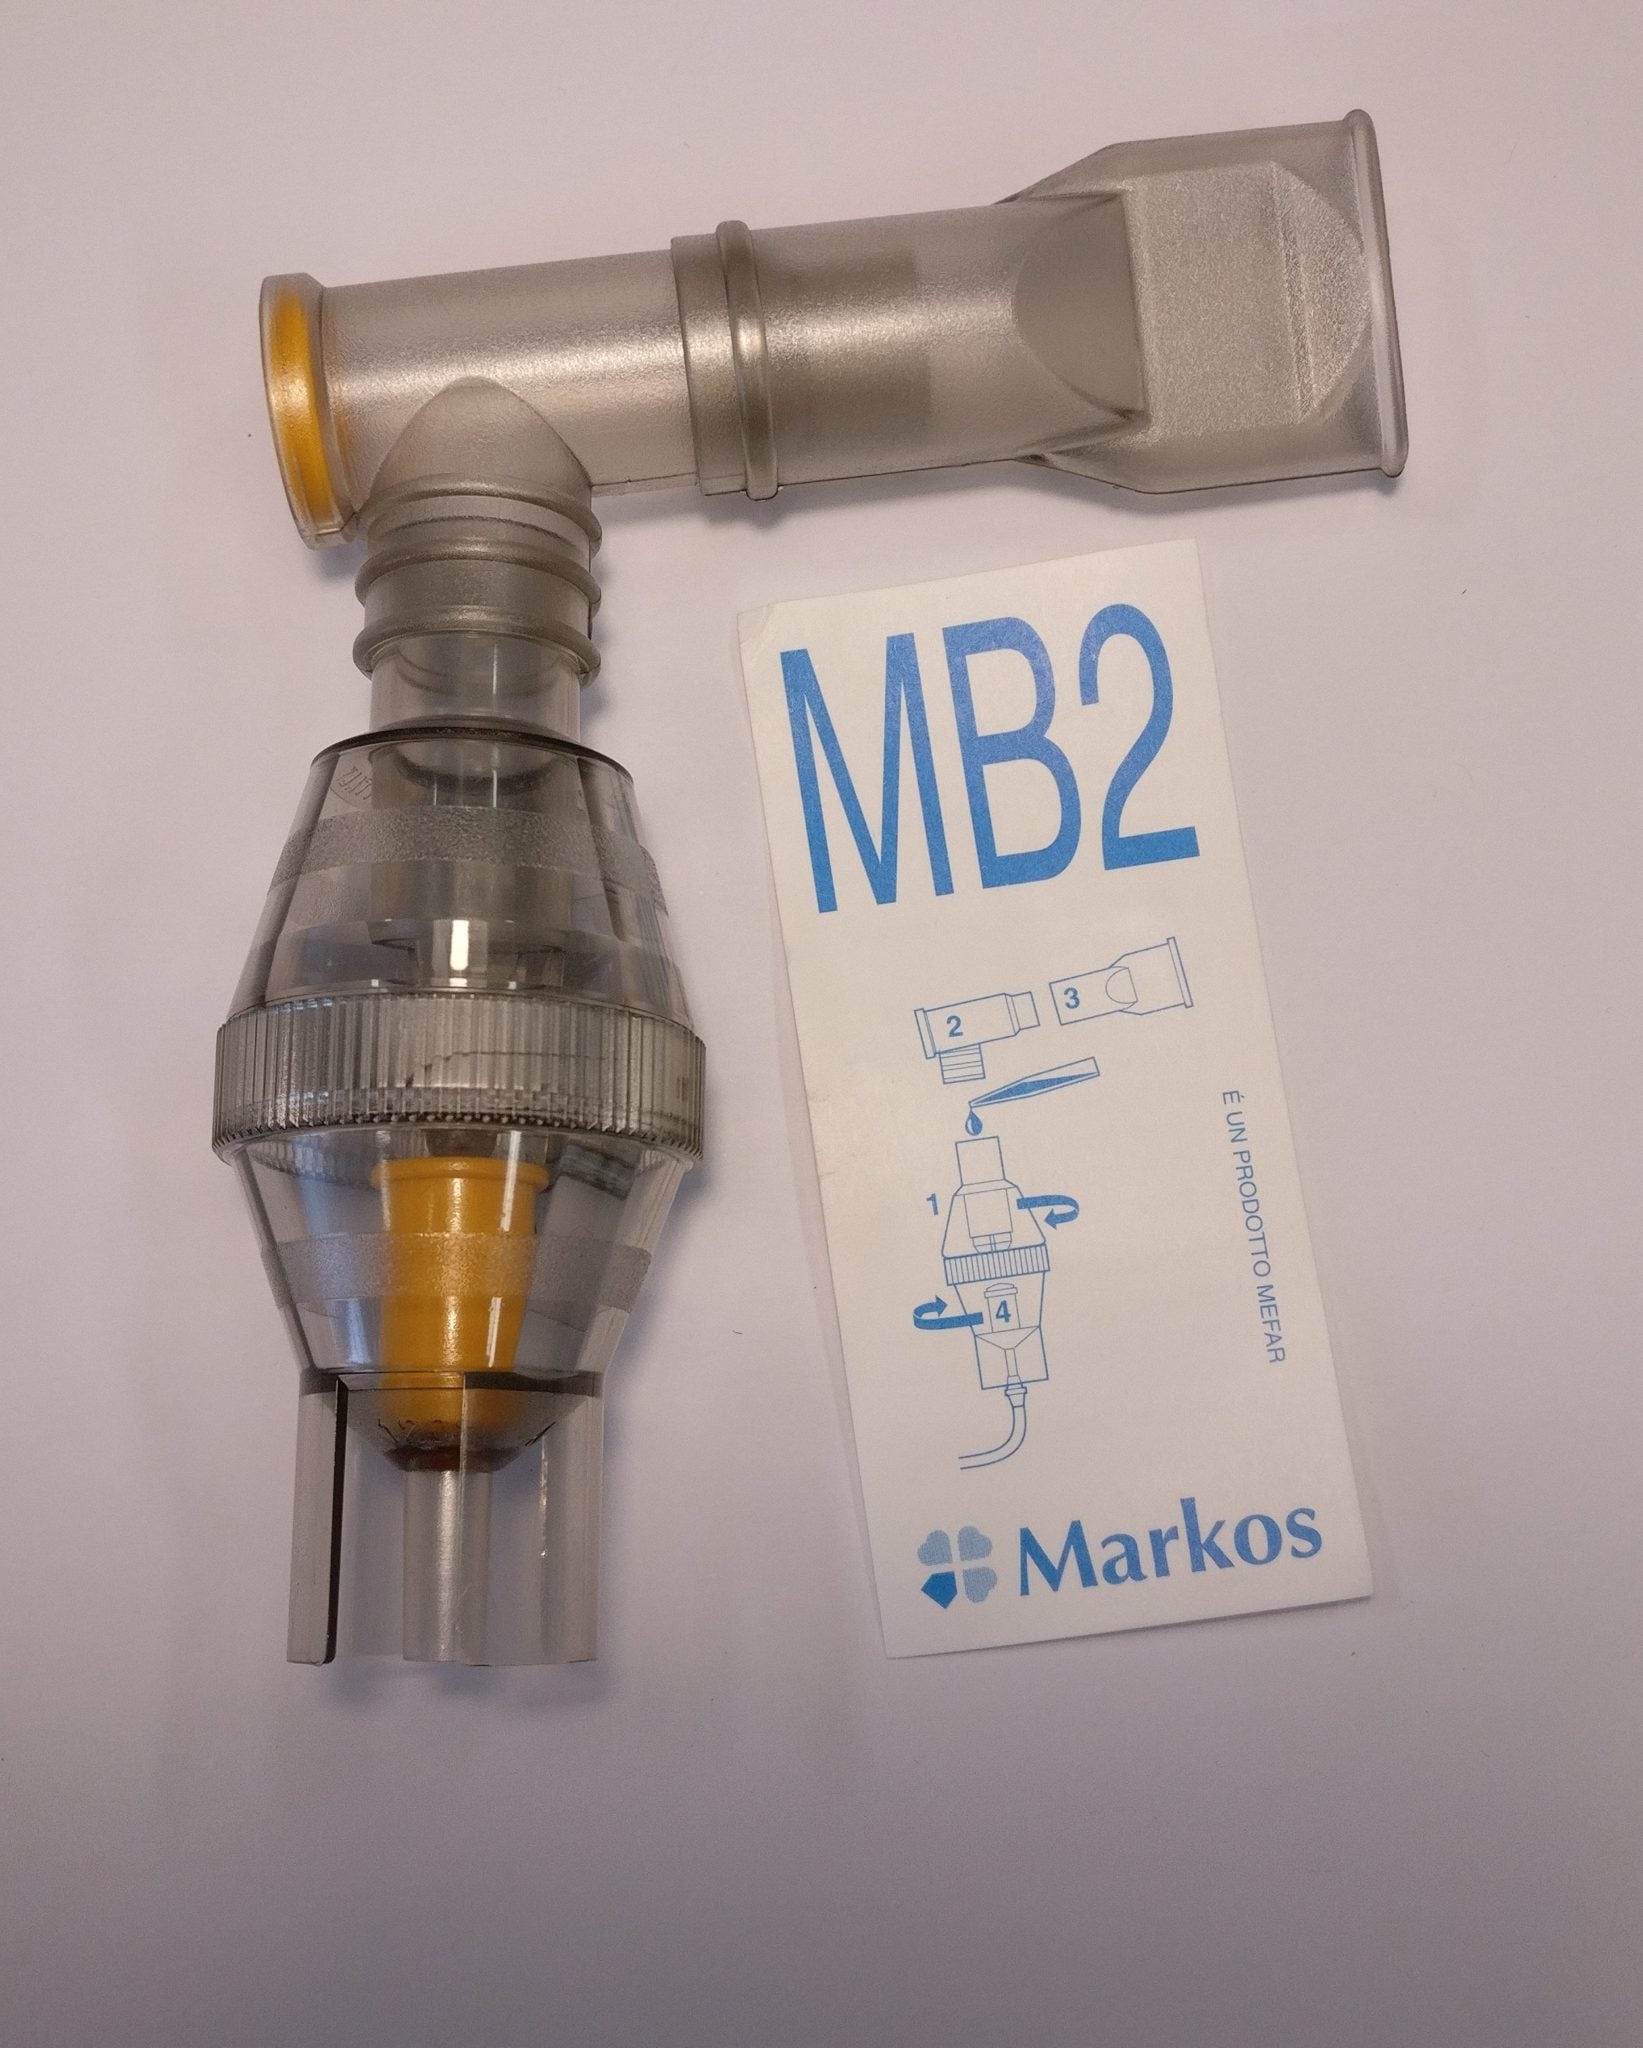 Ampolla per nebulizzatore Markos MB2